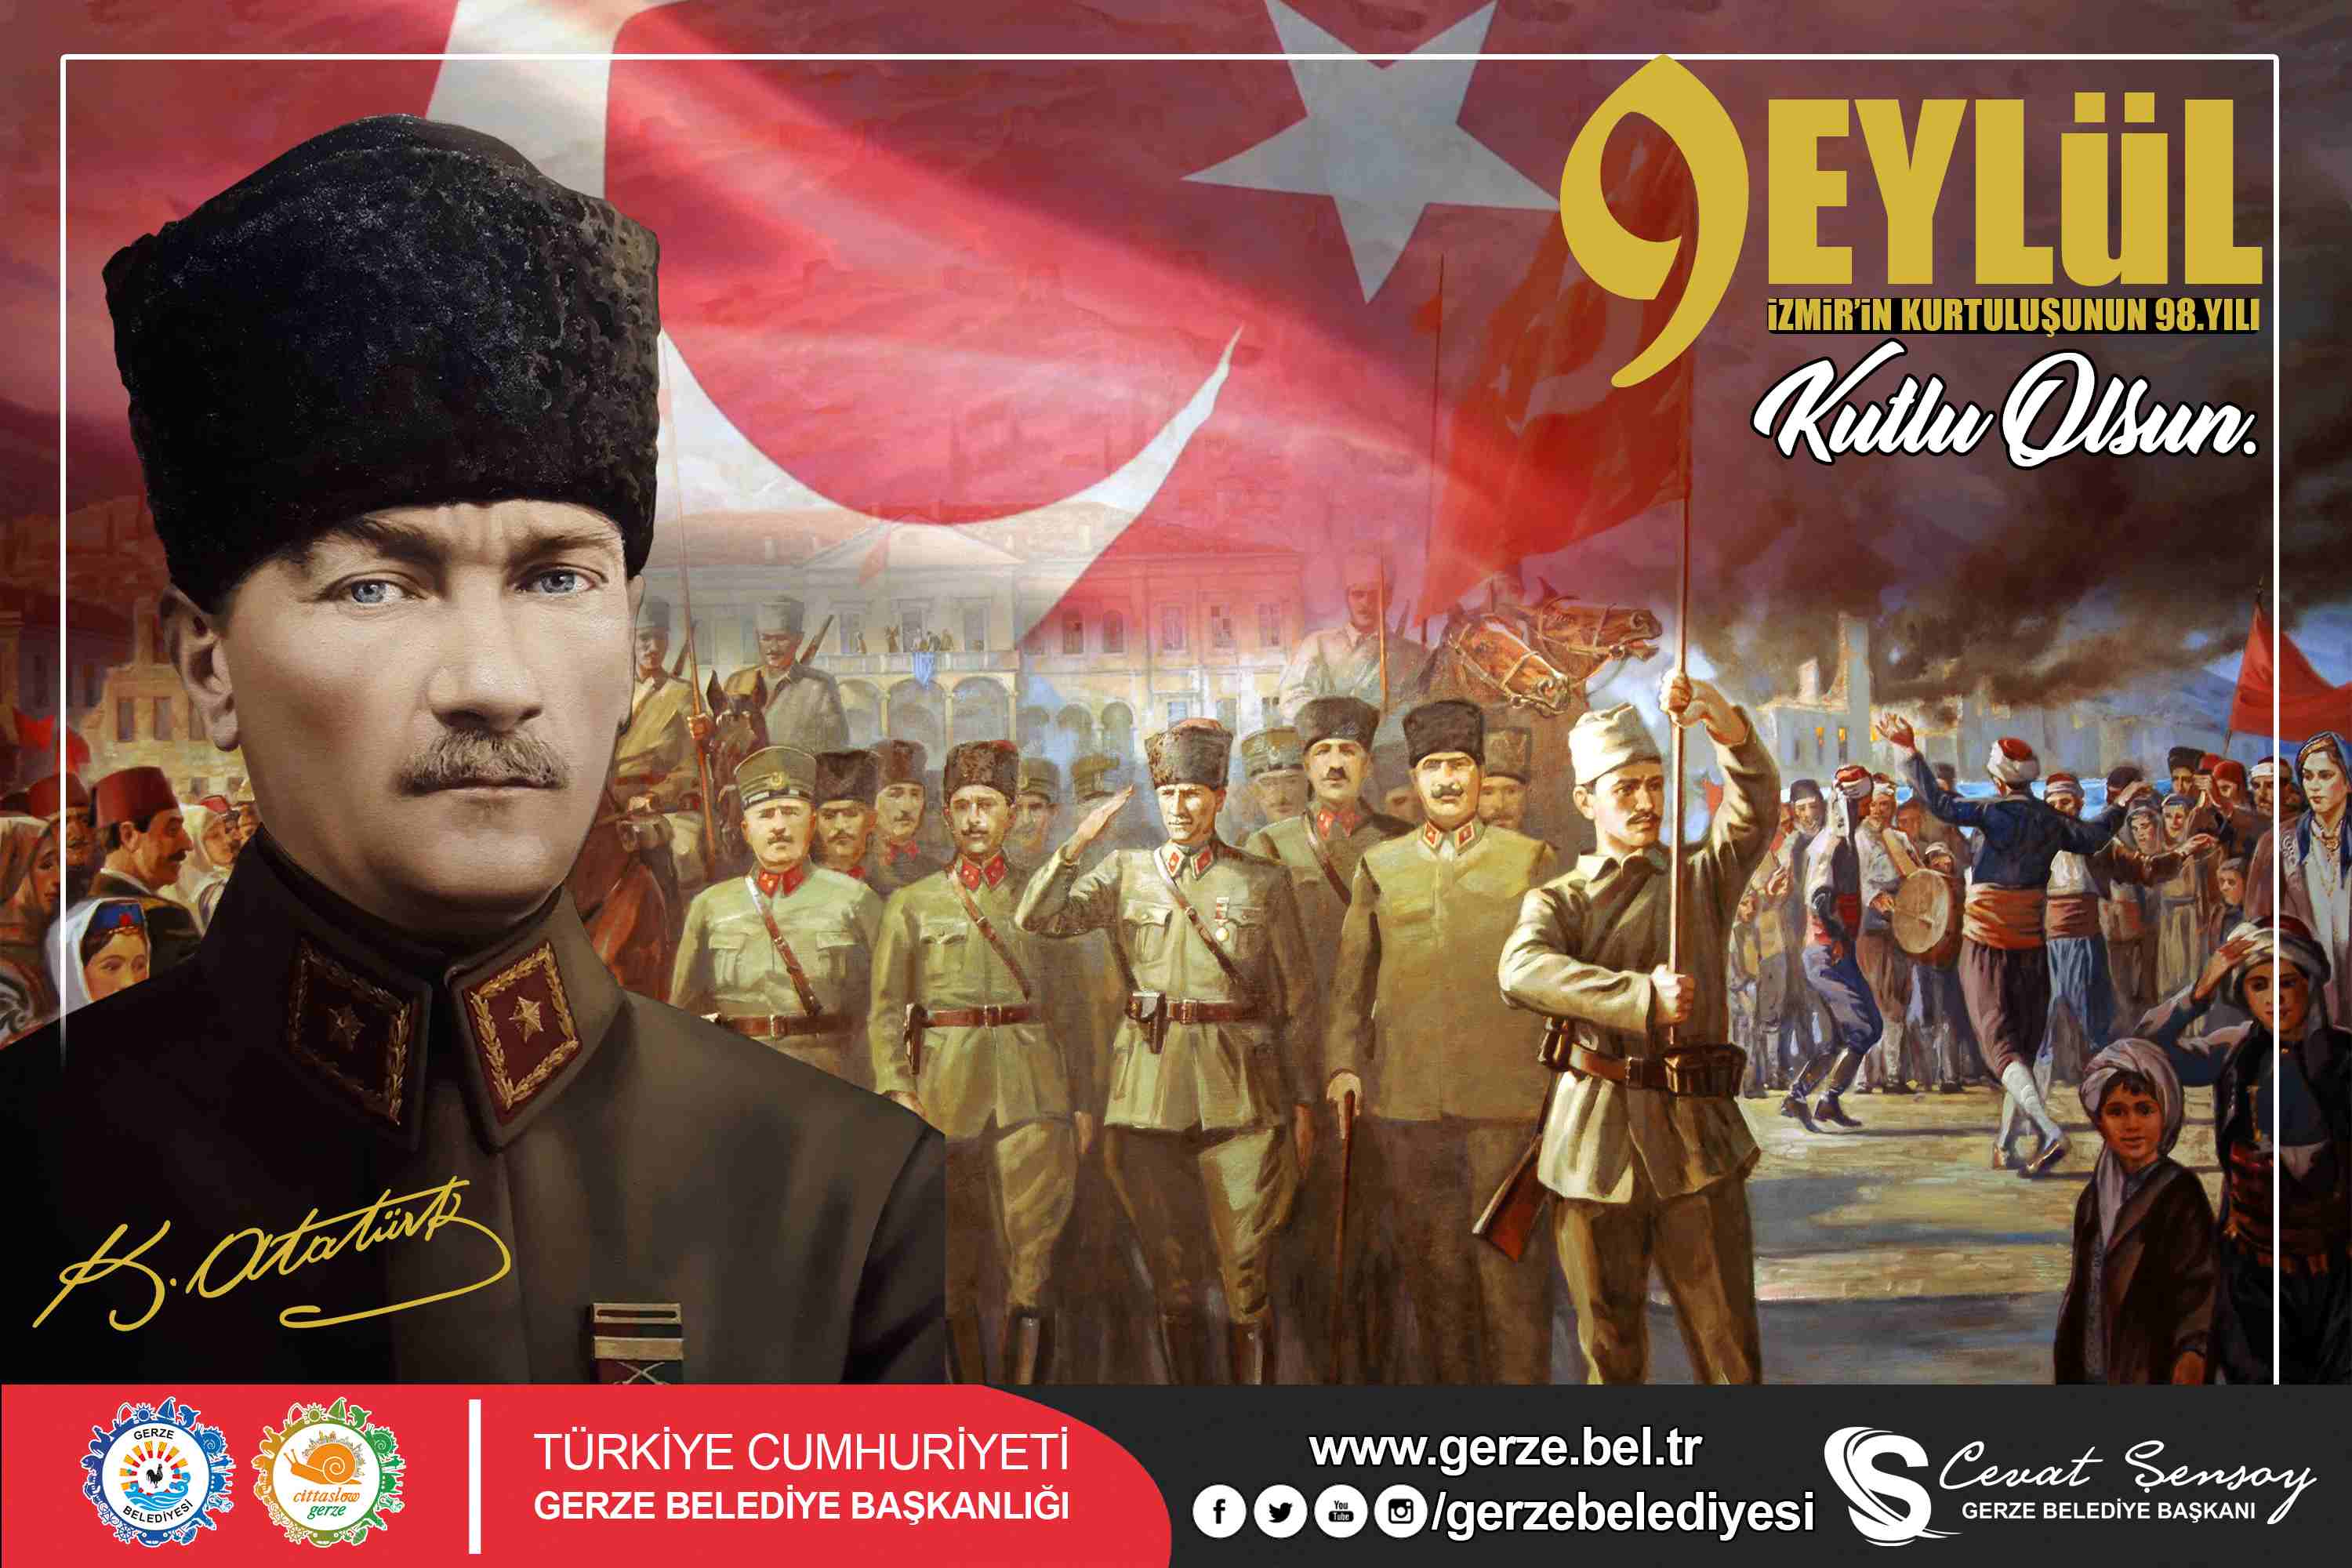 Başkan Cevat ŞENSOY’un 9 Eylül İzmir’in Kurtuluşu Kutlama Mesajı